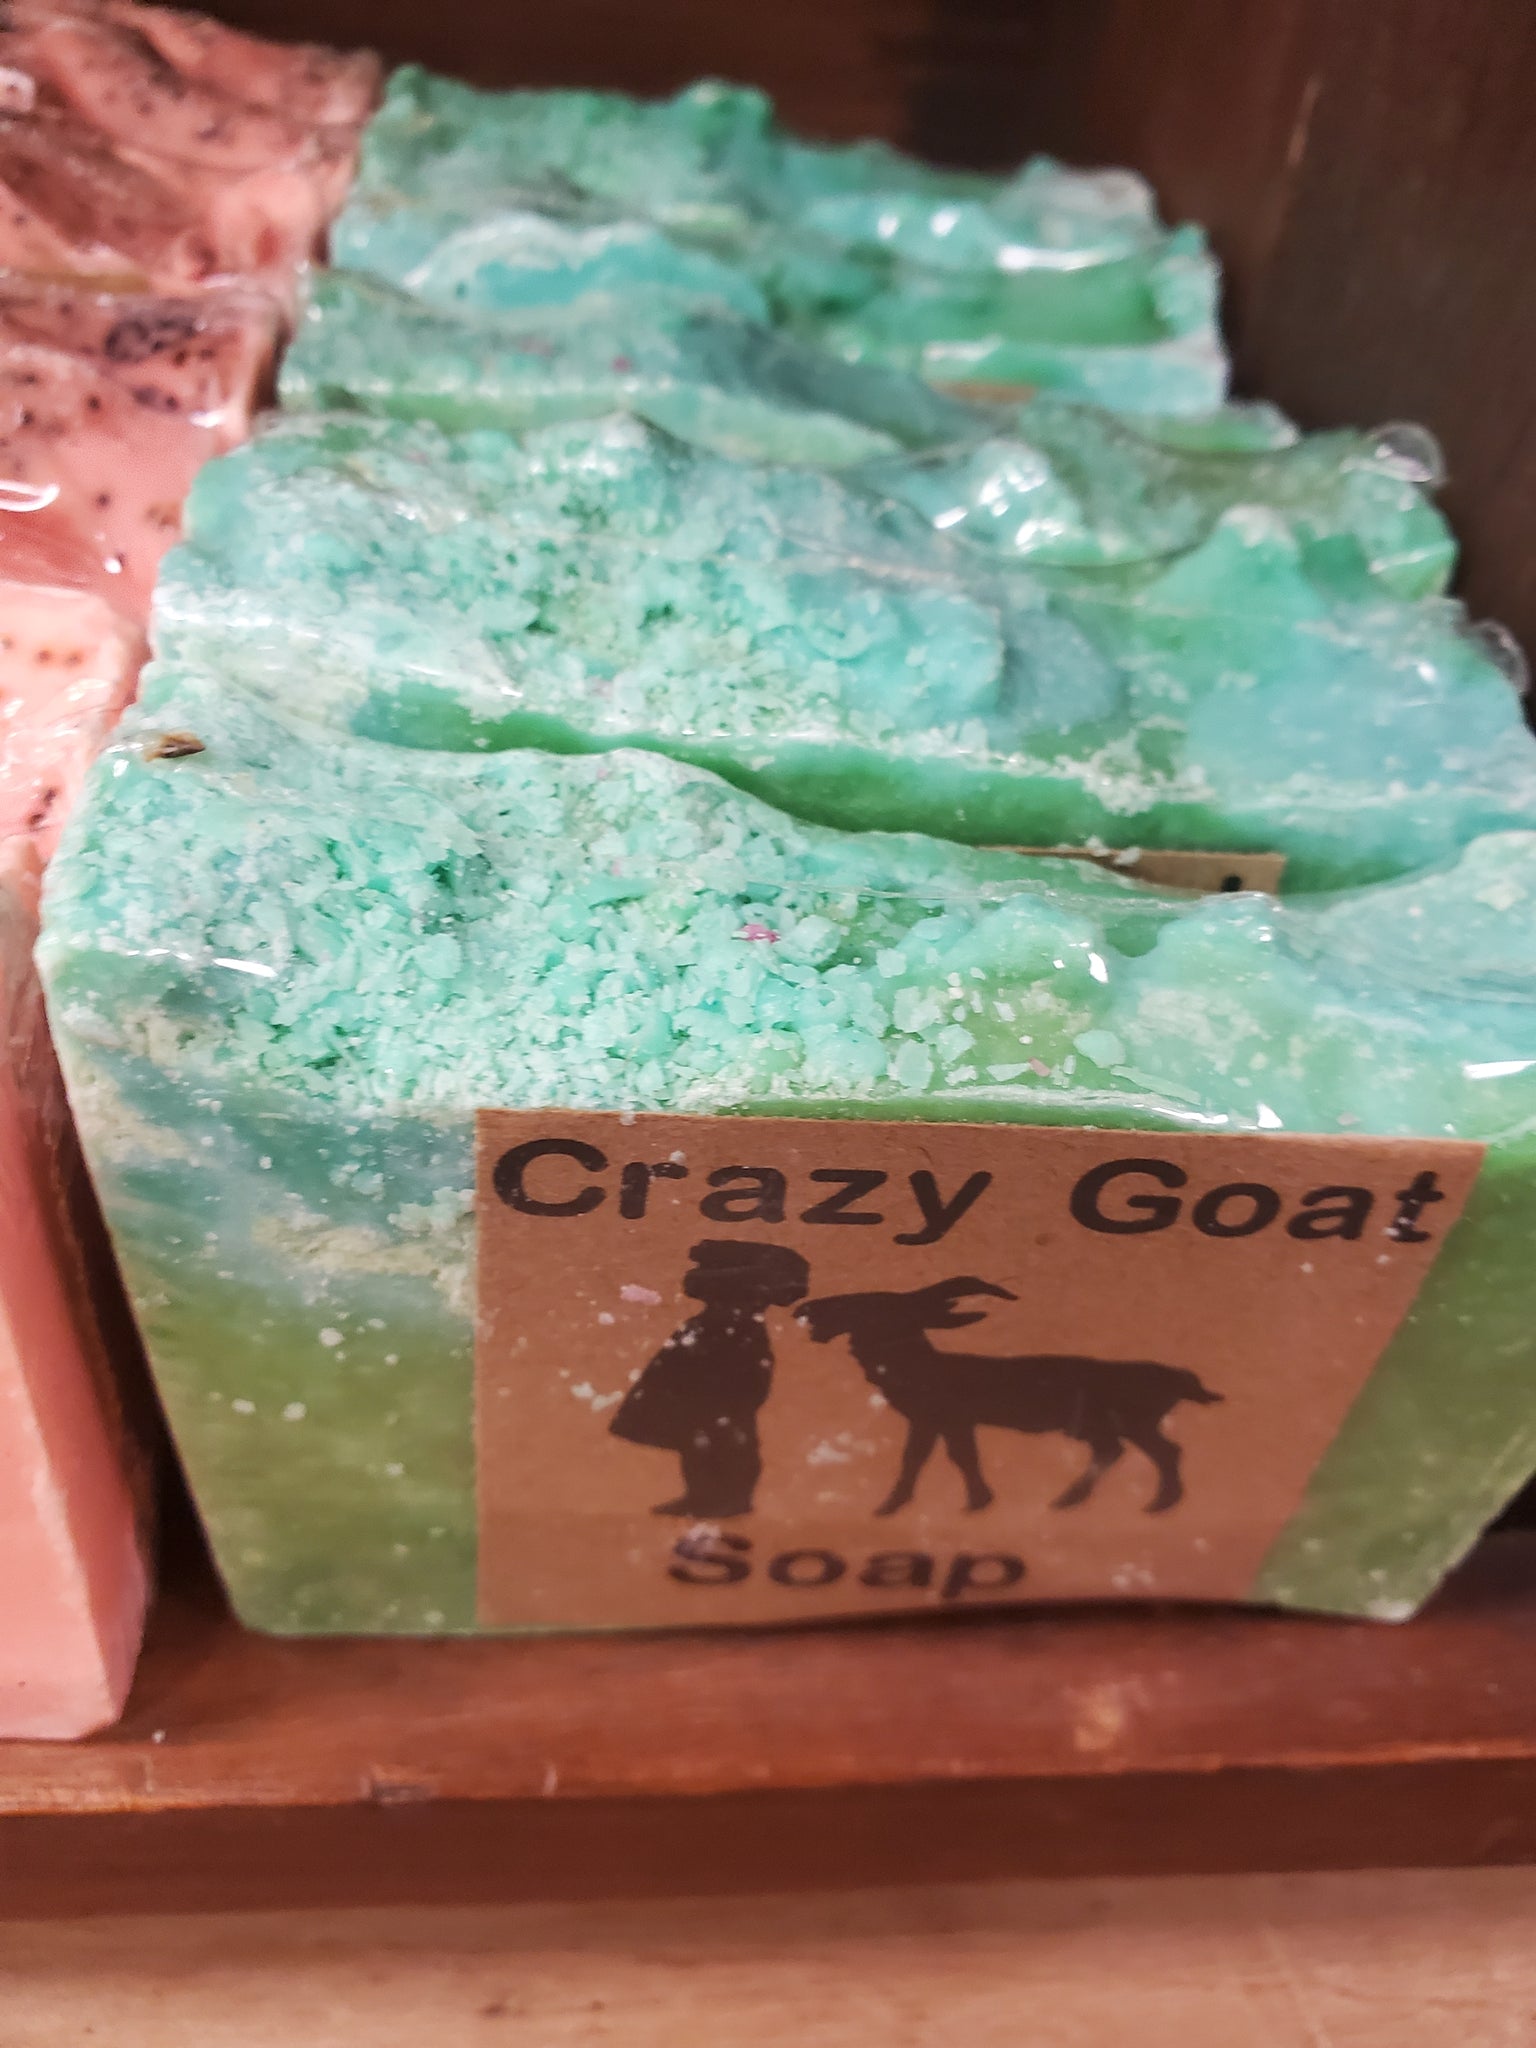 Crazy Goat Soap